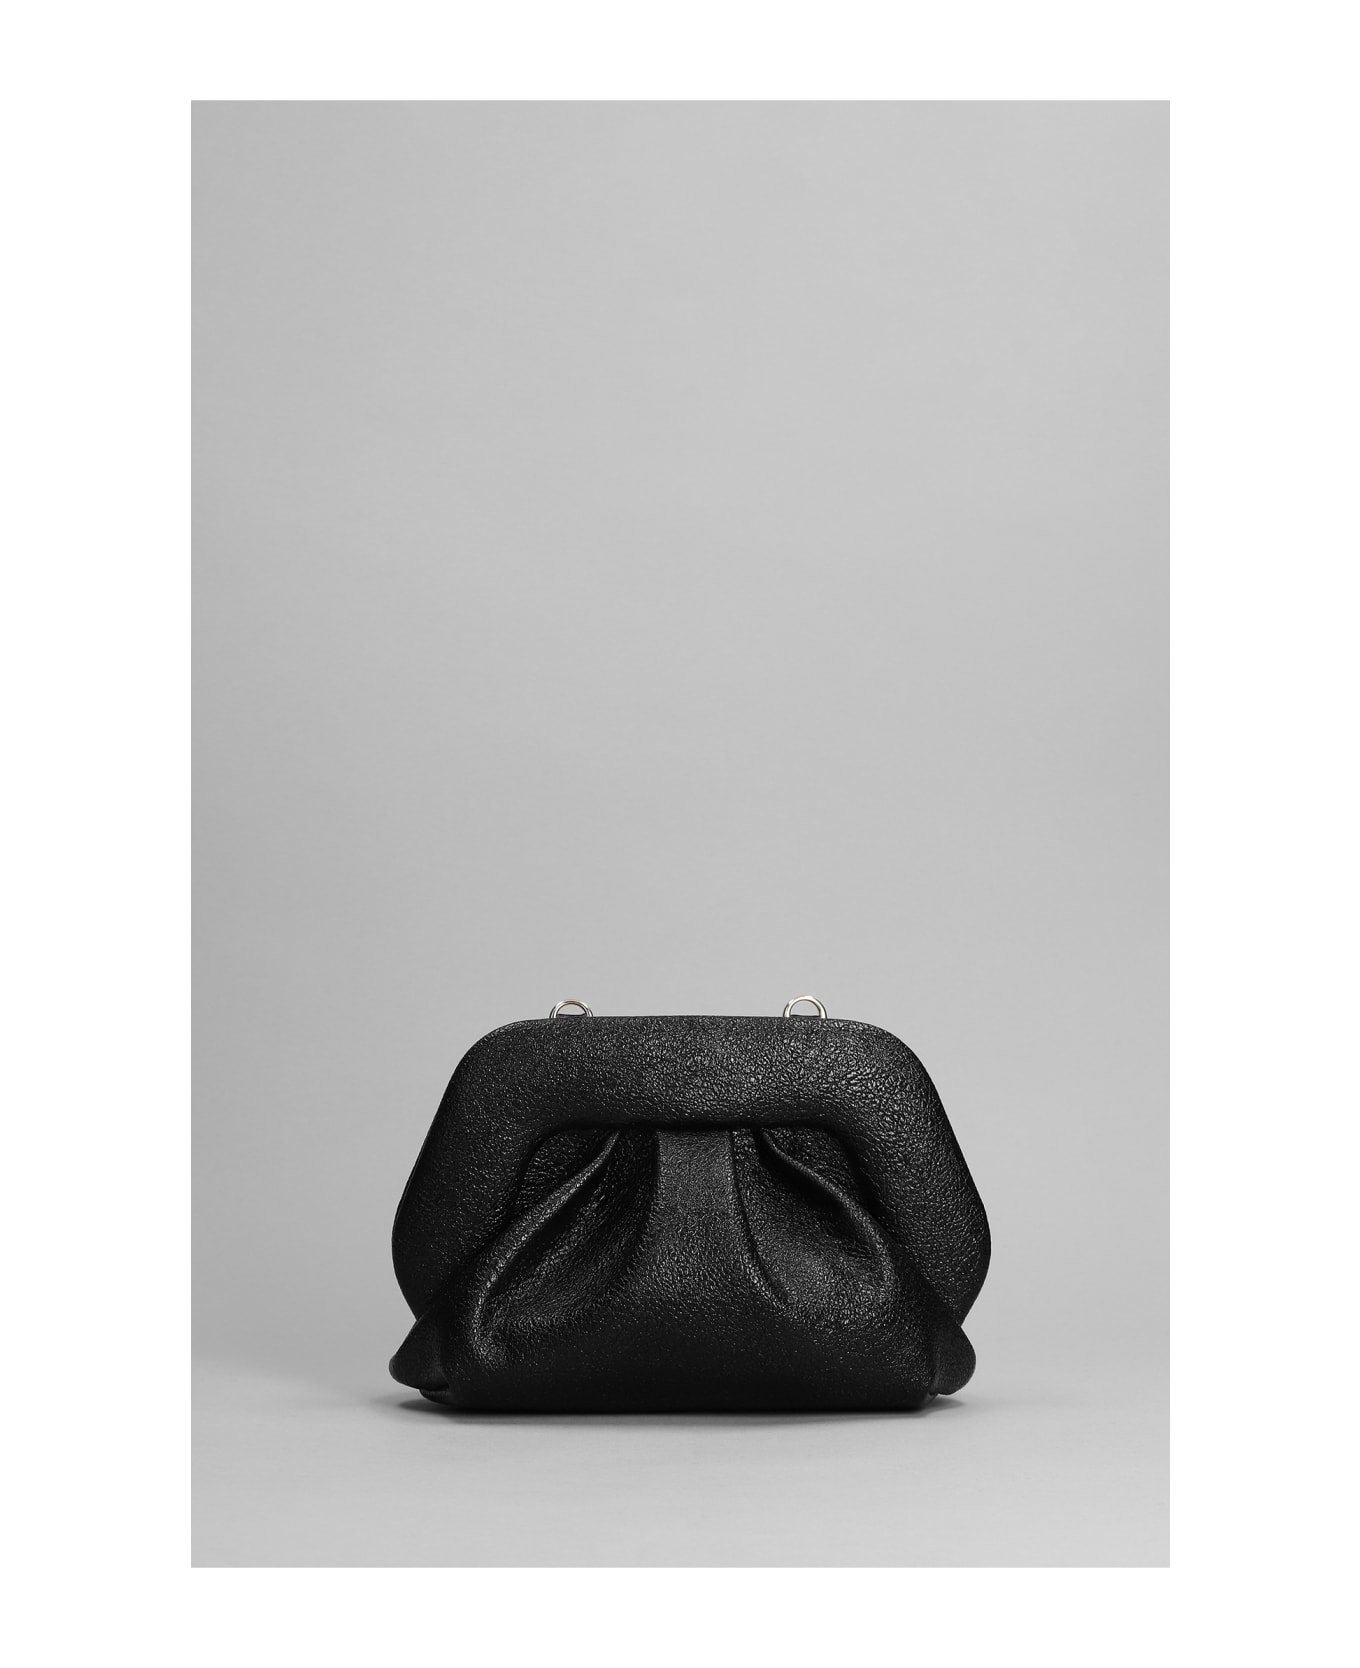 THEMOIRè Gea Laminated Clutch In Black Faux Leather - black